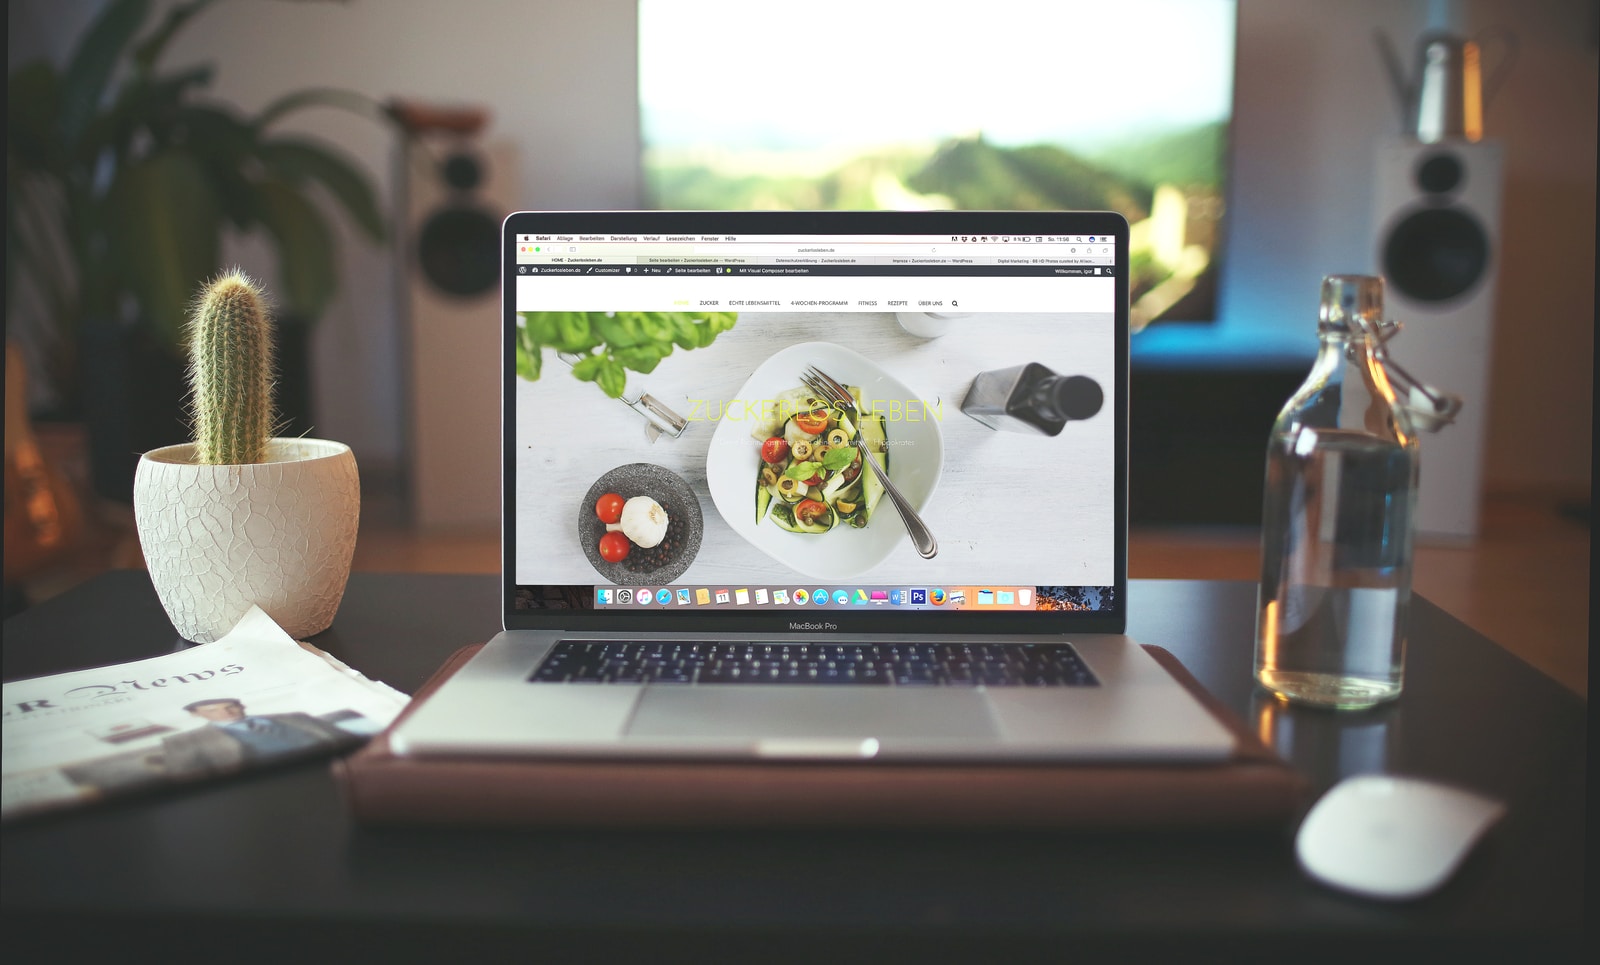 Macbook Pro sur l'écran duquel on aperçoit un plat de légumes